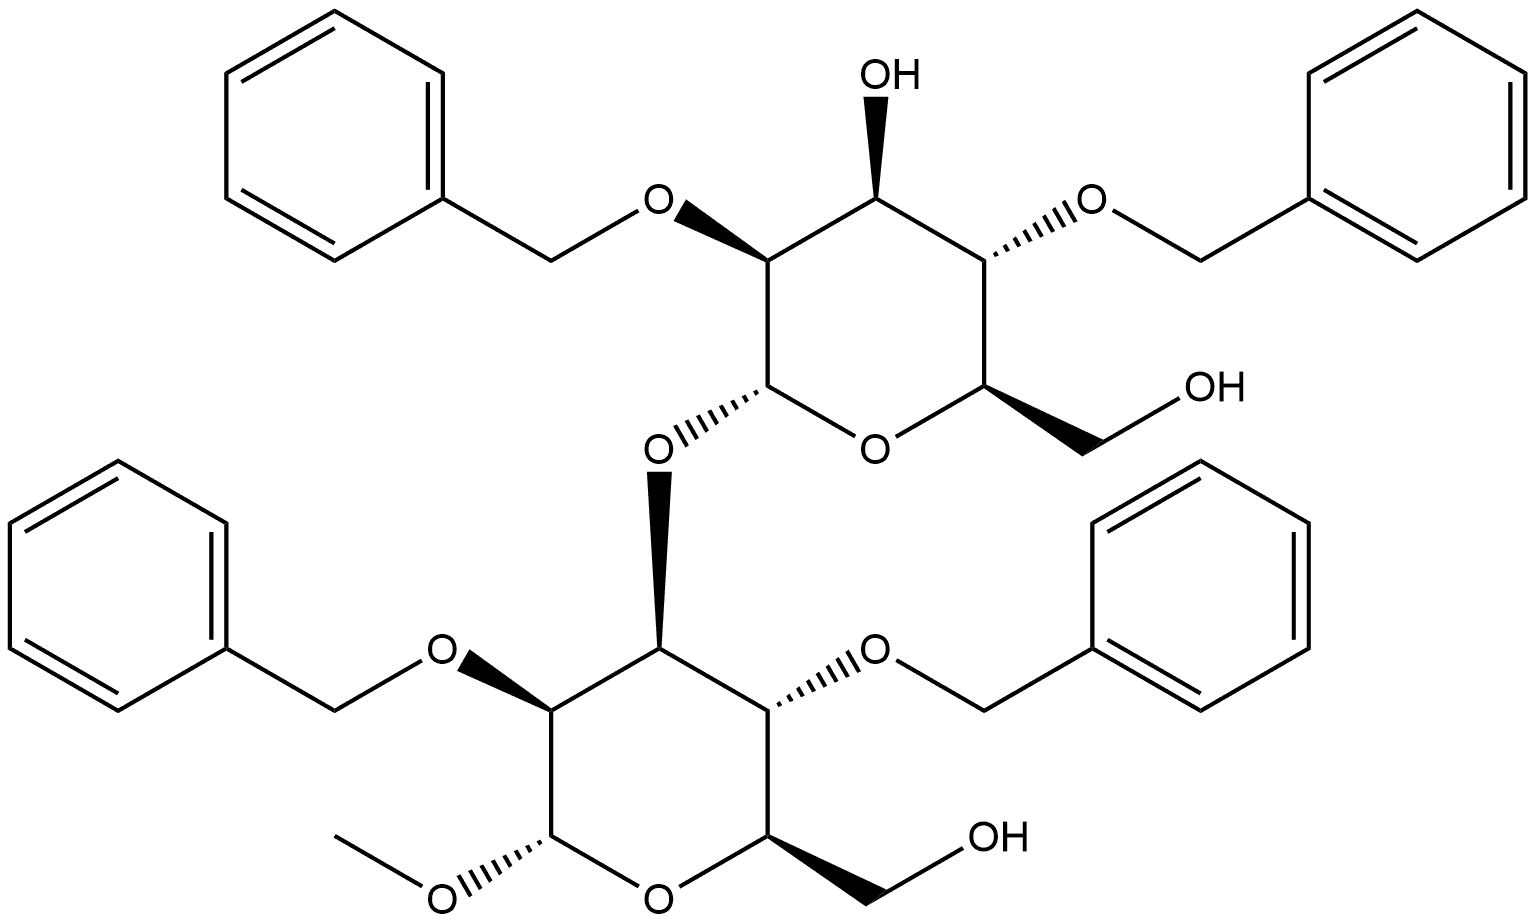 α-D-Mannopyranoside, methyl 3-O-[2,4-bis-O-(phenylmethyl)-α-D-mannopyranosyl]-2,4-bis-O-(phenylmethyl)-